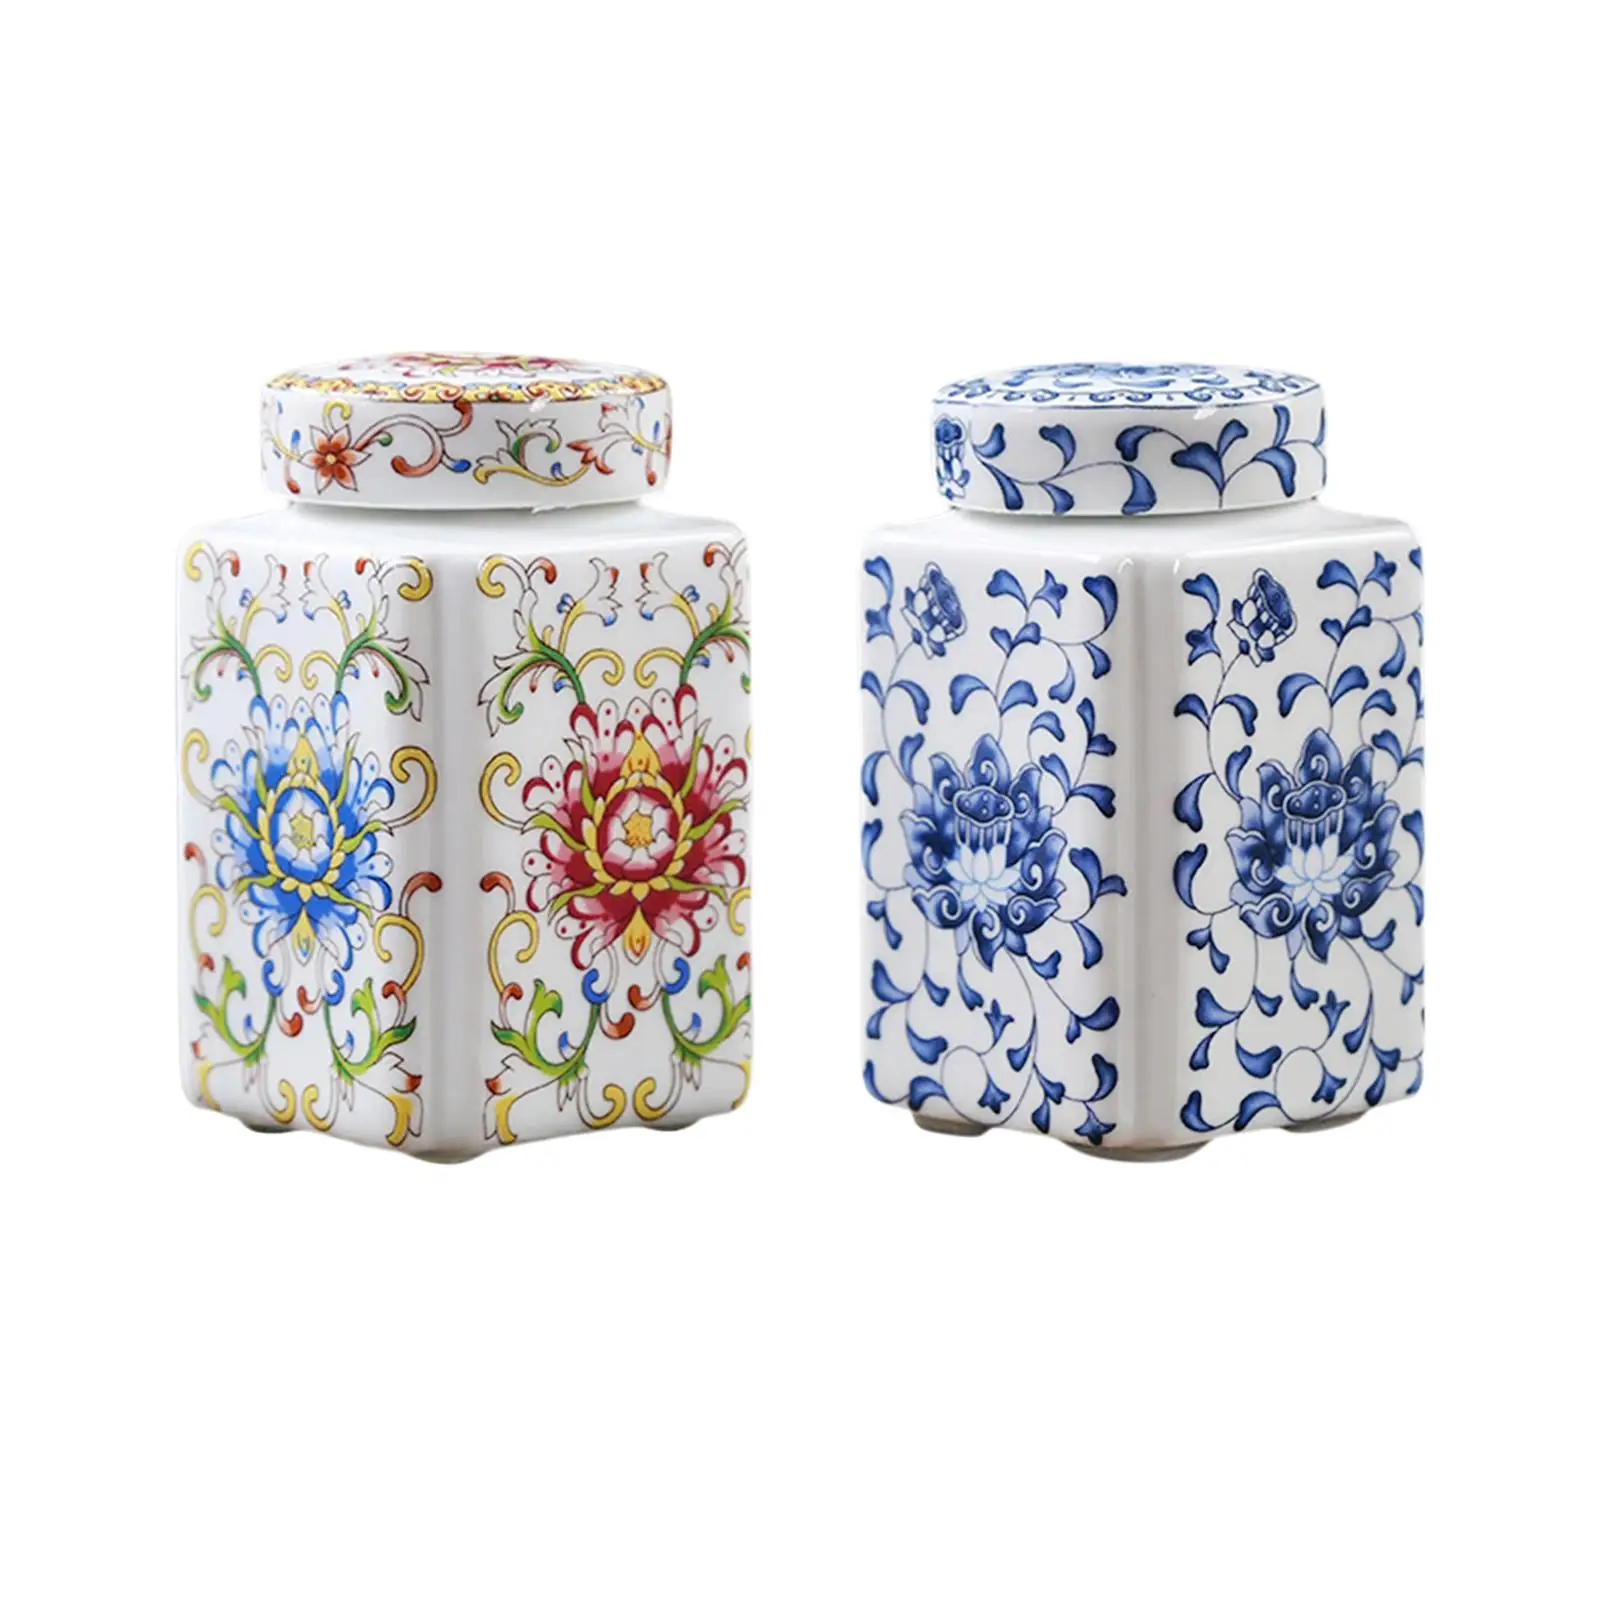 Porcelain Temple Jar Flower Vase Flower Display Organizer Versatile Ceramic Ginger Jar for Home Wedding Table Bedroom Decoration